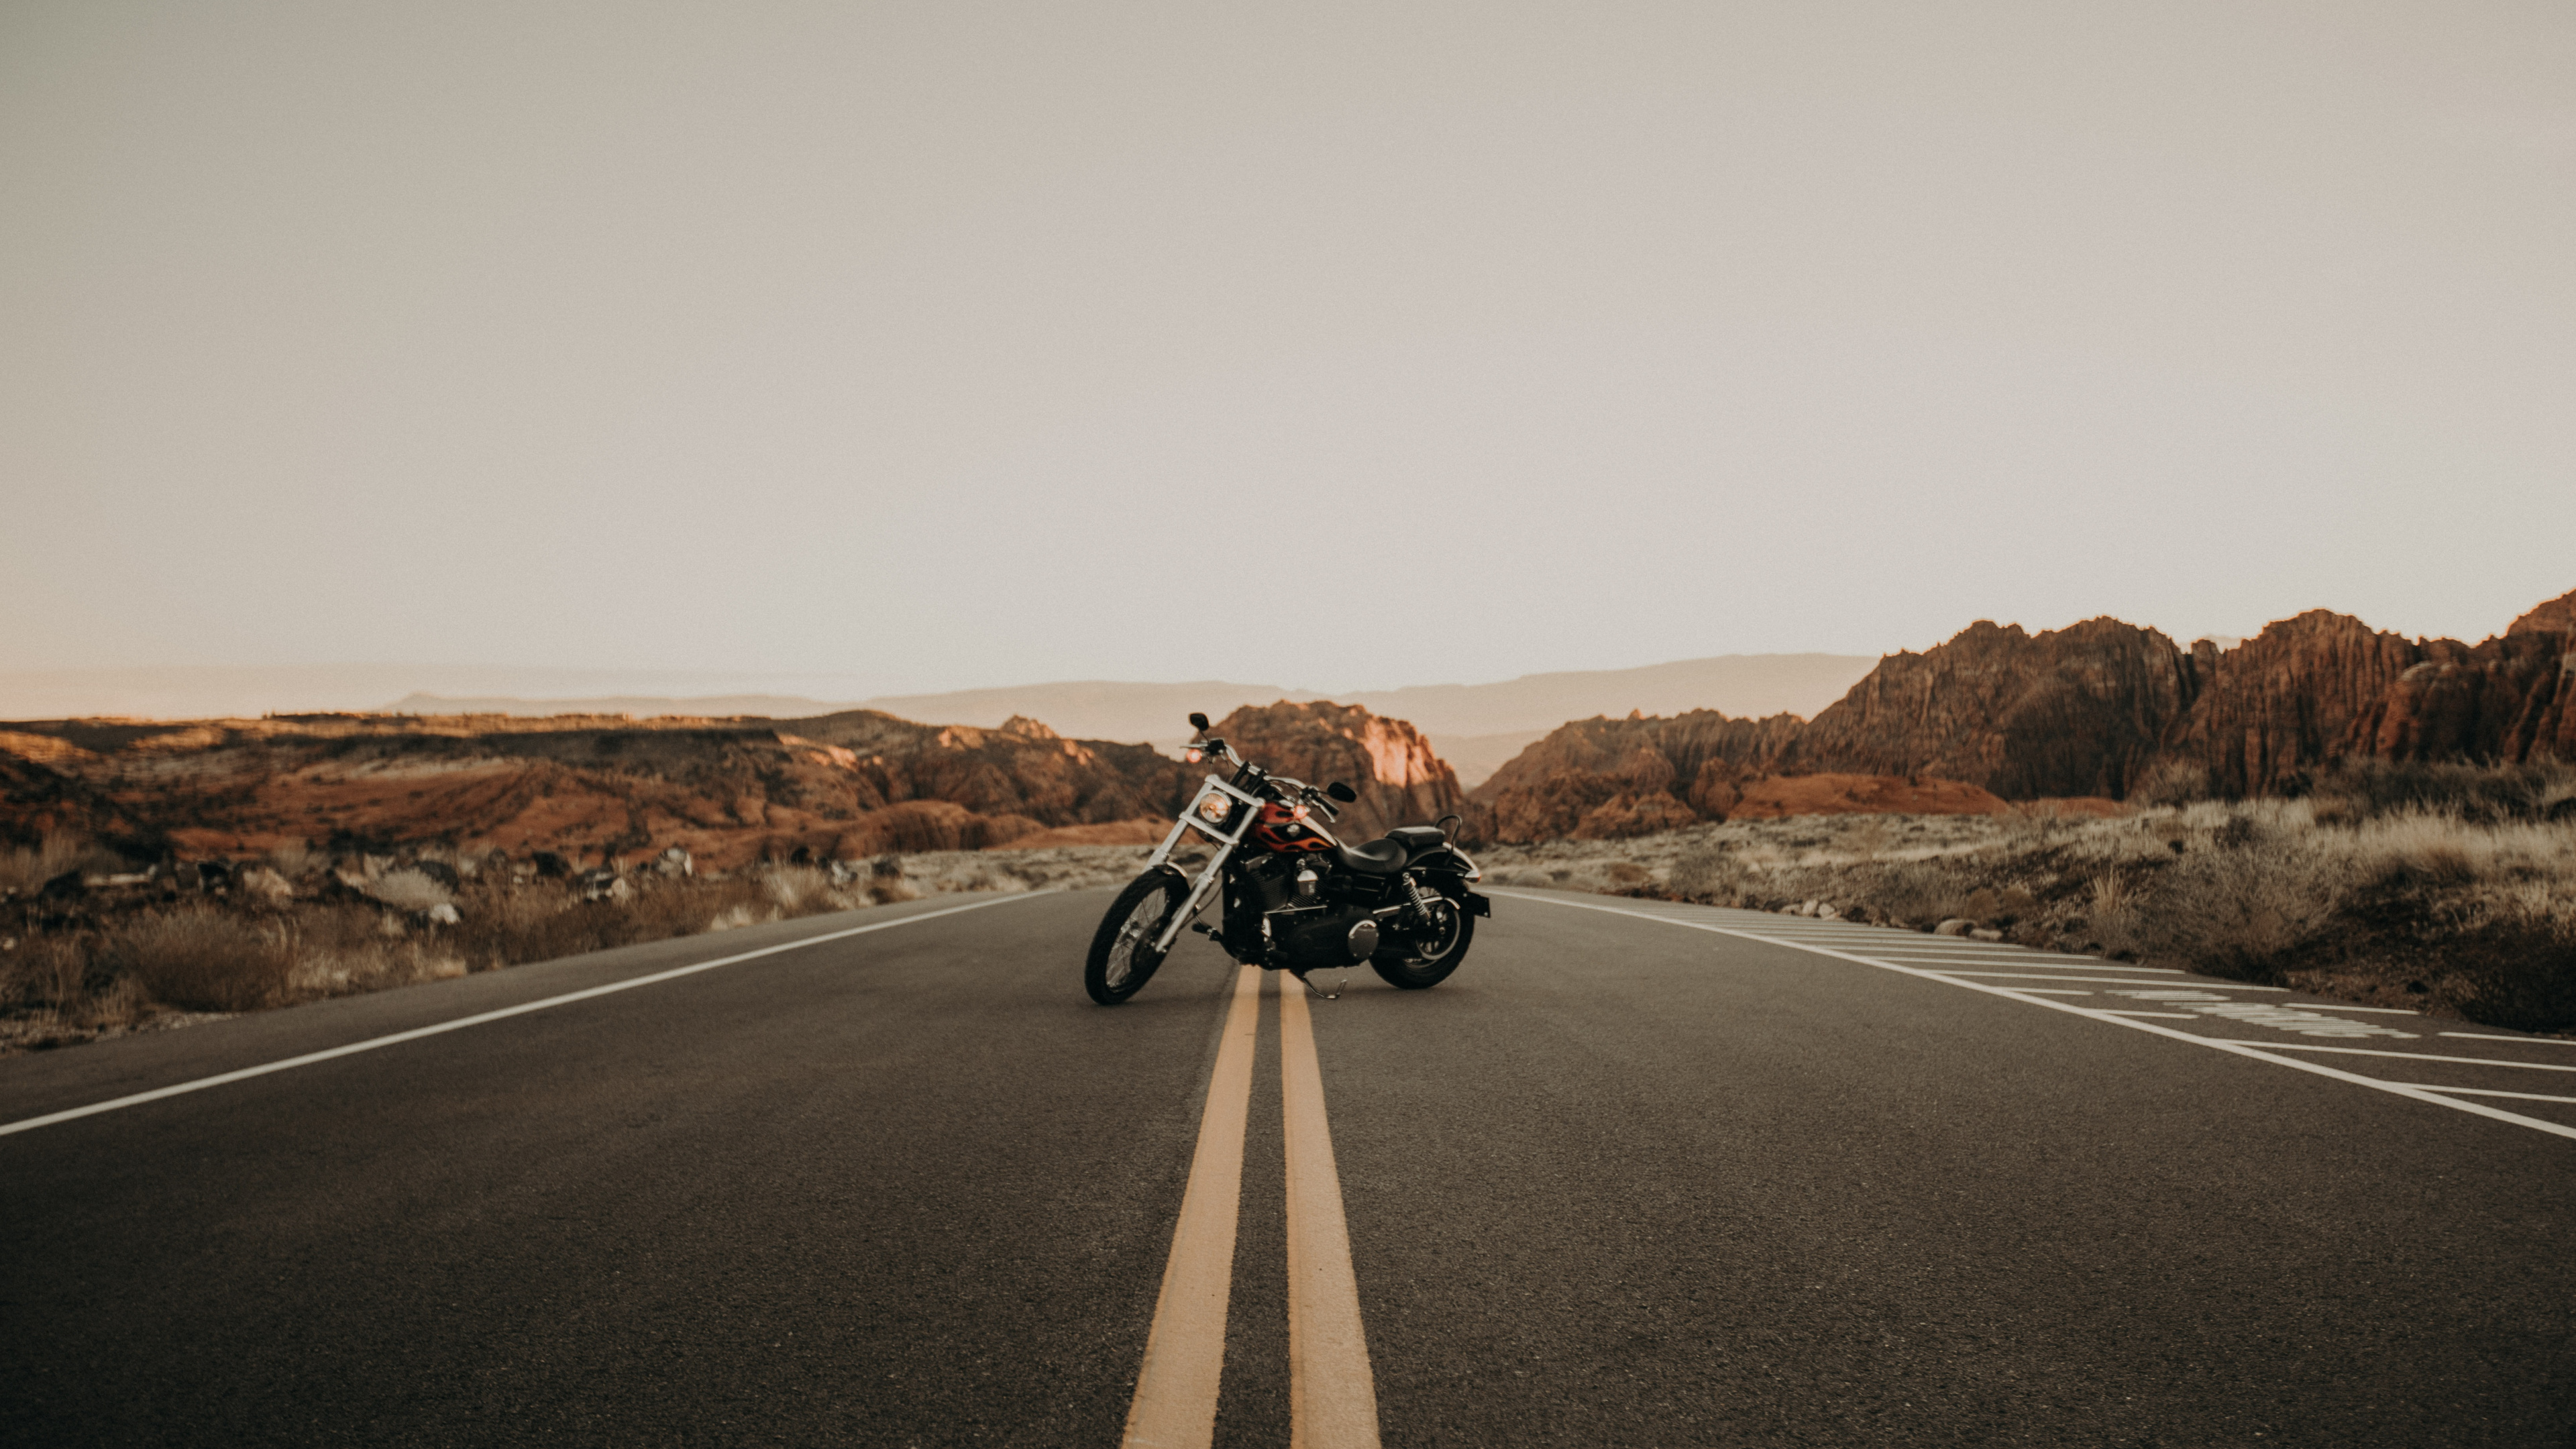 Motocicleta en Blanco y Negro en la Carretera Durante el Día. Wallpaper in 3840x2160 Resolution